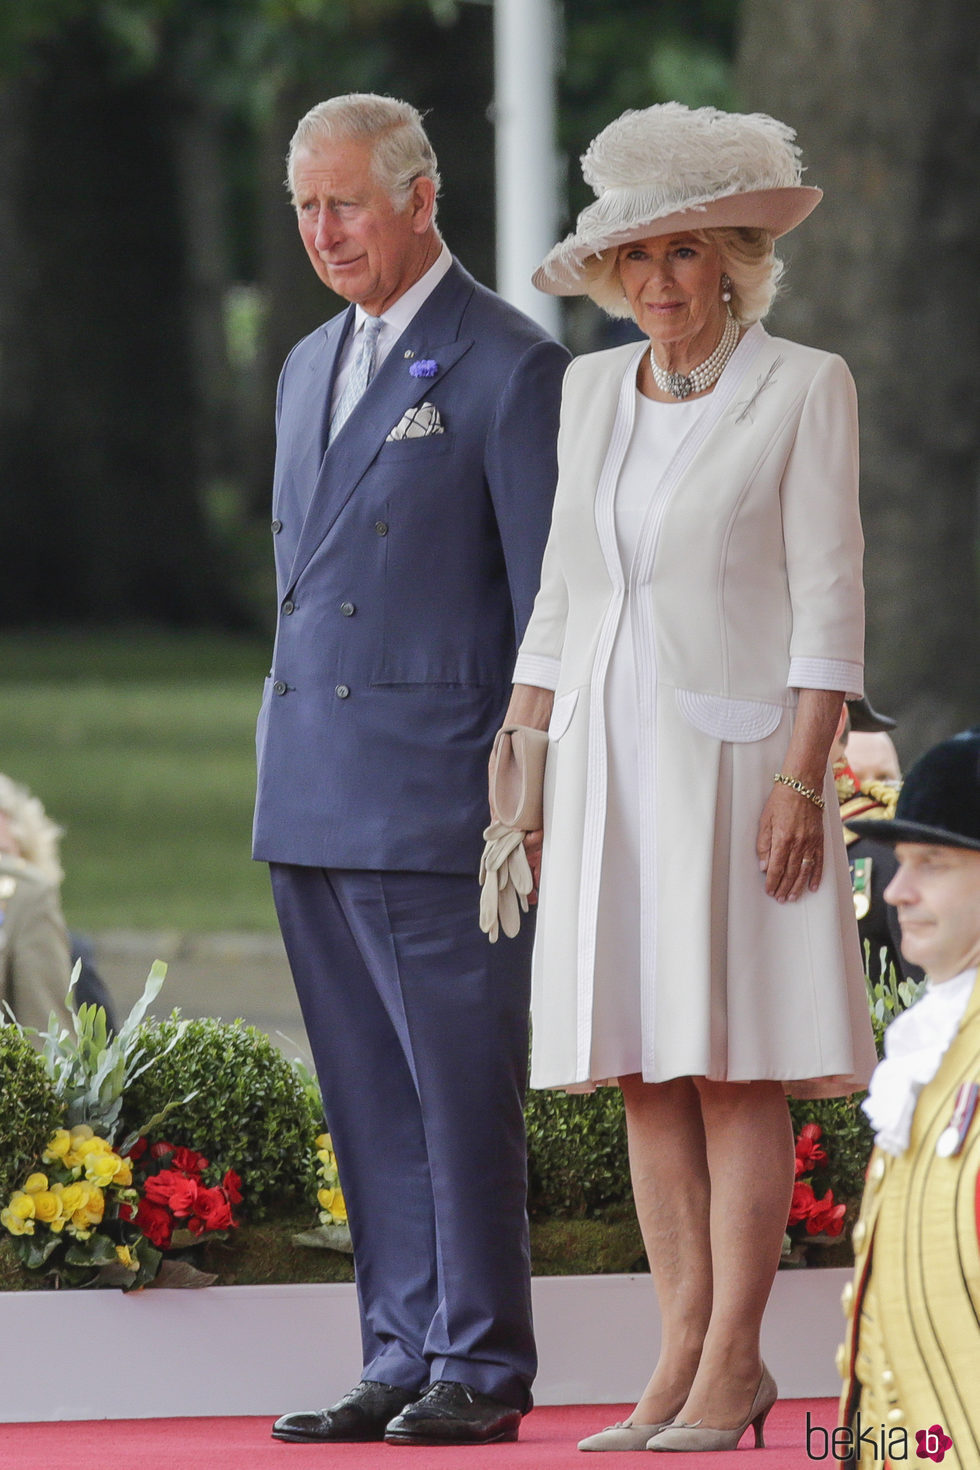 El Príncipe de Gales y la Duquesa de Cornualles en la ceremonia de bienvenida a los Reyes Felipe y Letizia por su Viaje de Estado a Reino Unido